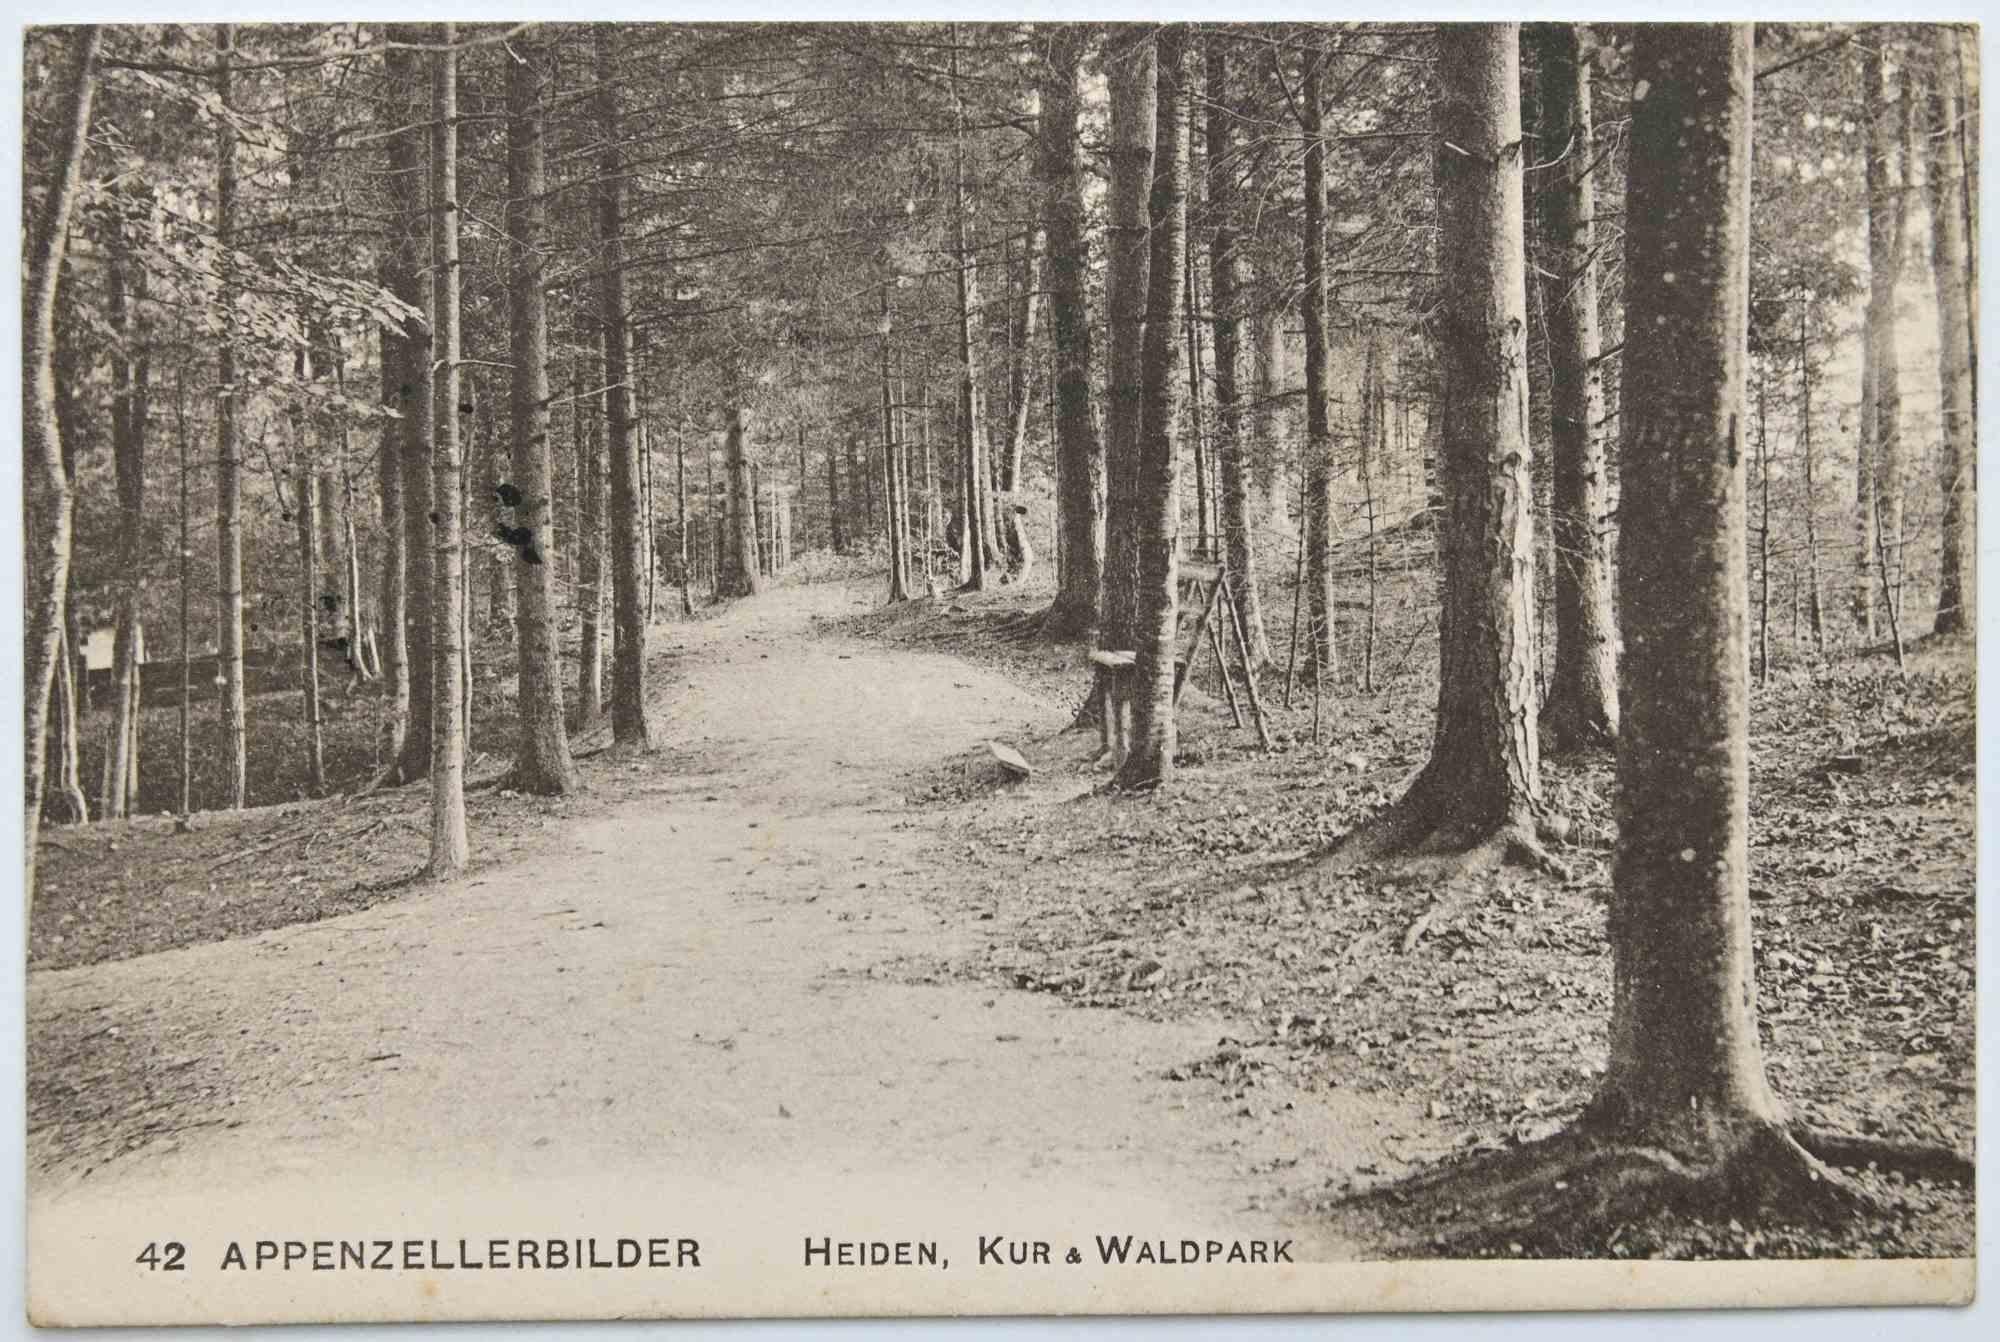 Vintage-Postcard von Appenzellerbilder, Heiden, Kur & Waldpark, 1957 – Art von Unknown